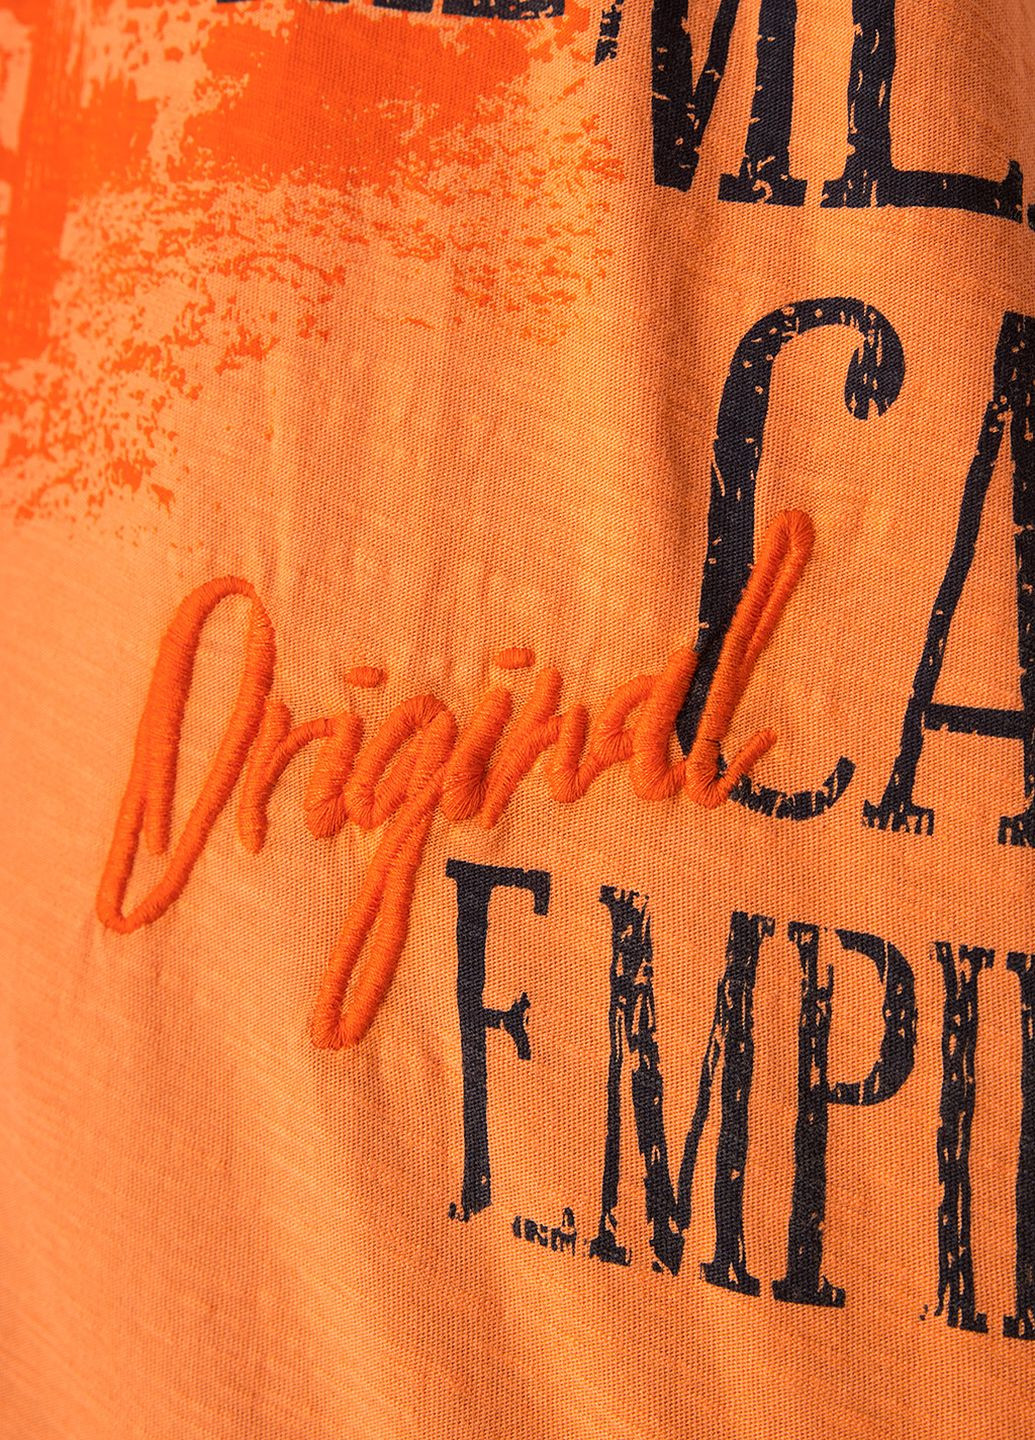 Оранжевая футболка Camp David